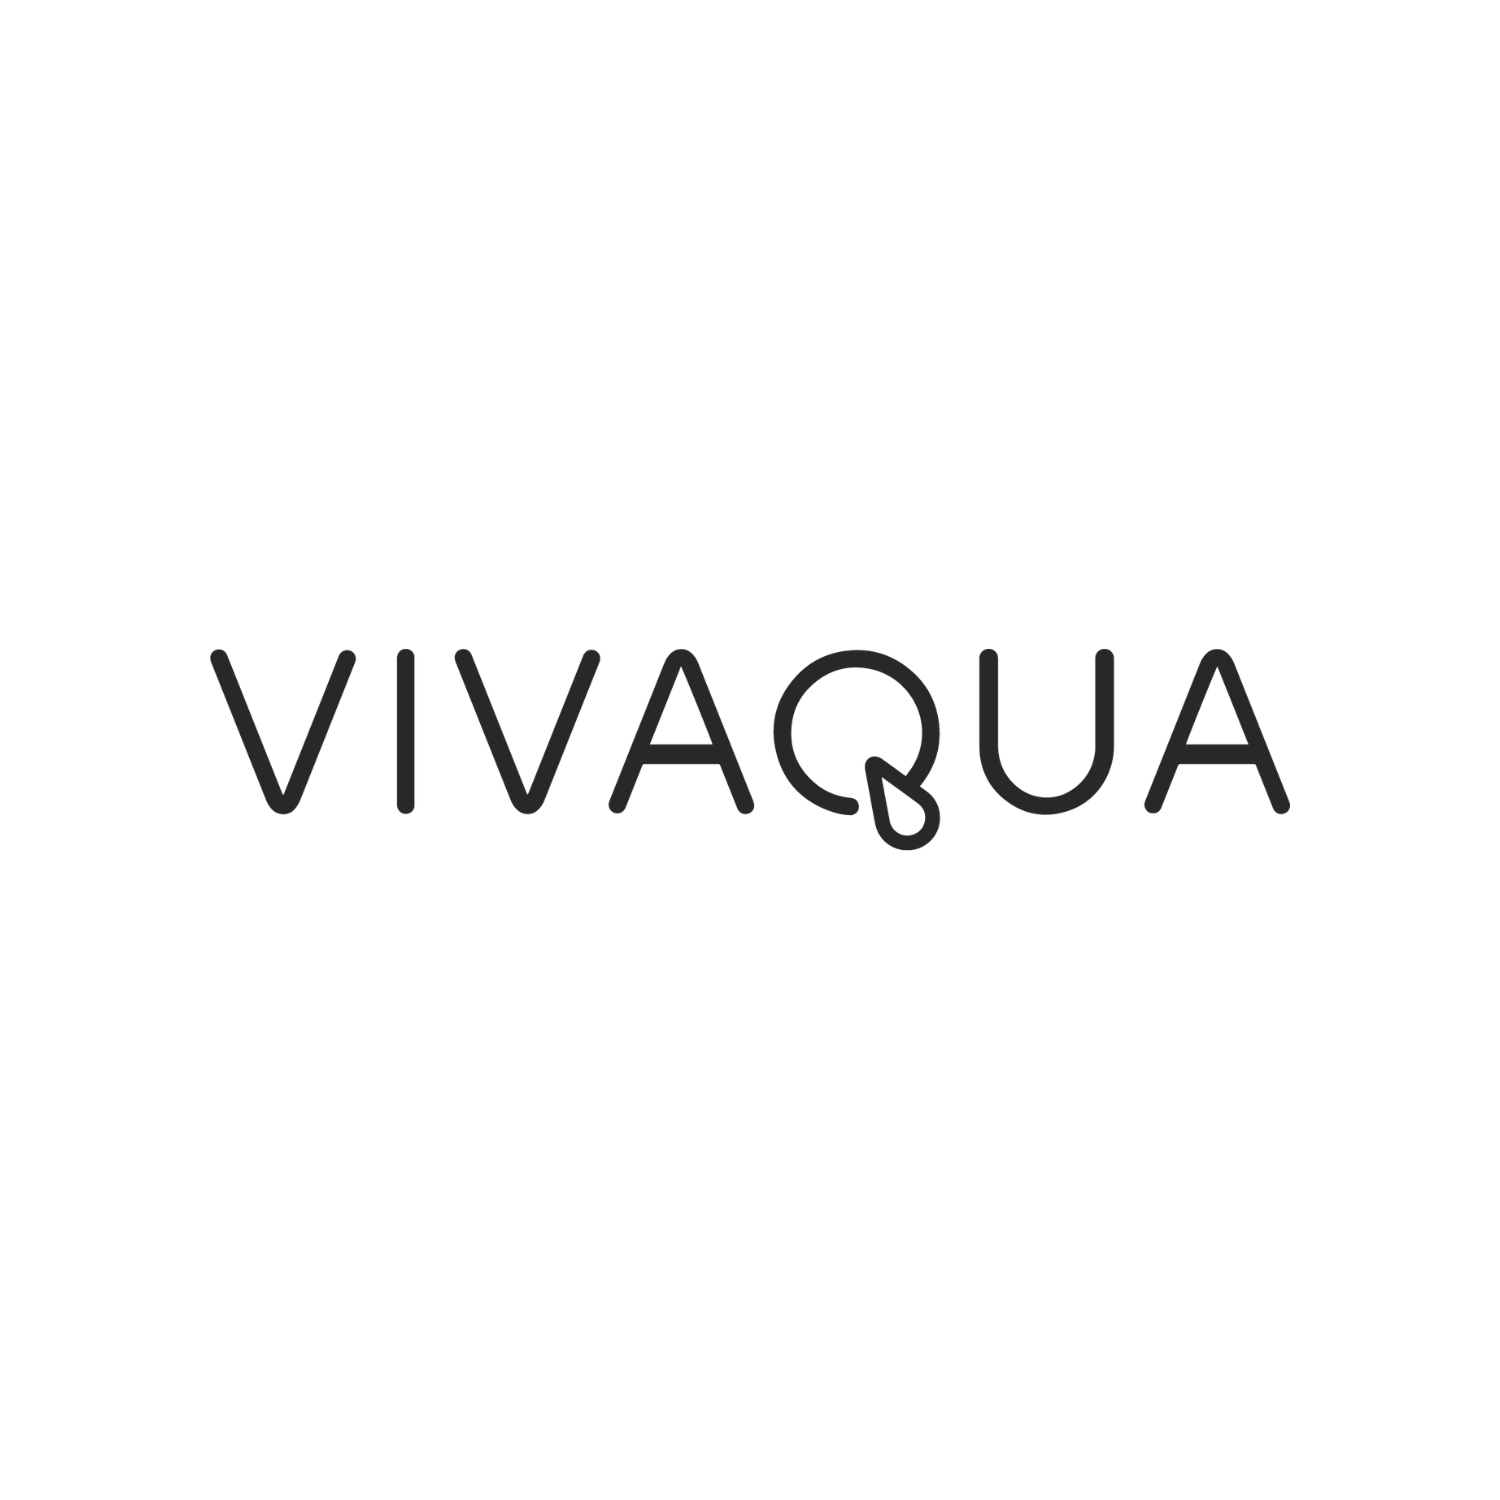 Vivaqua